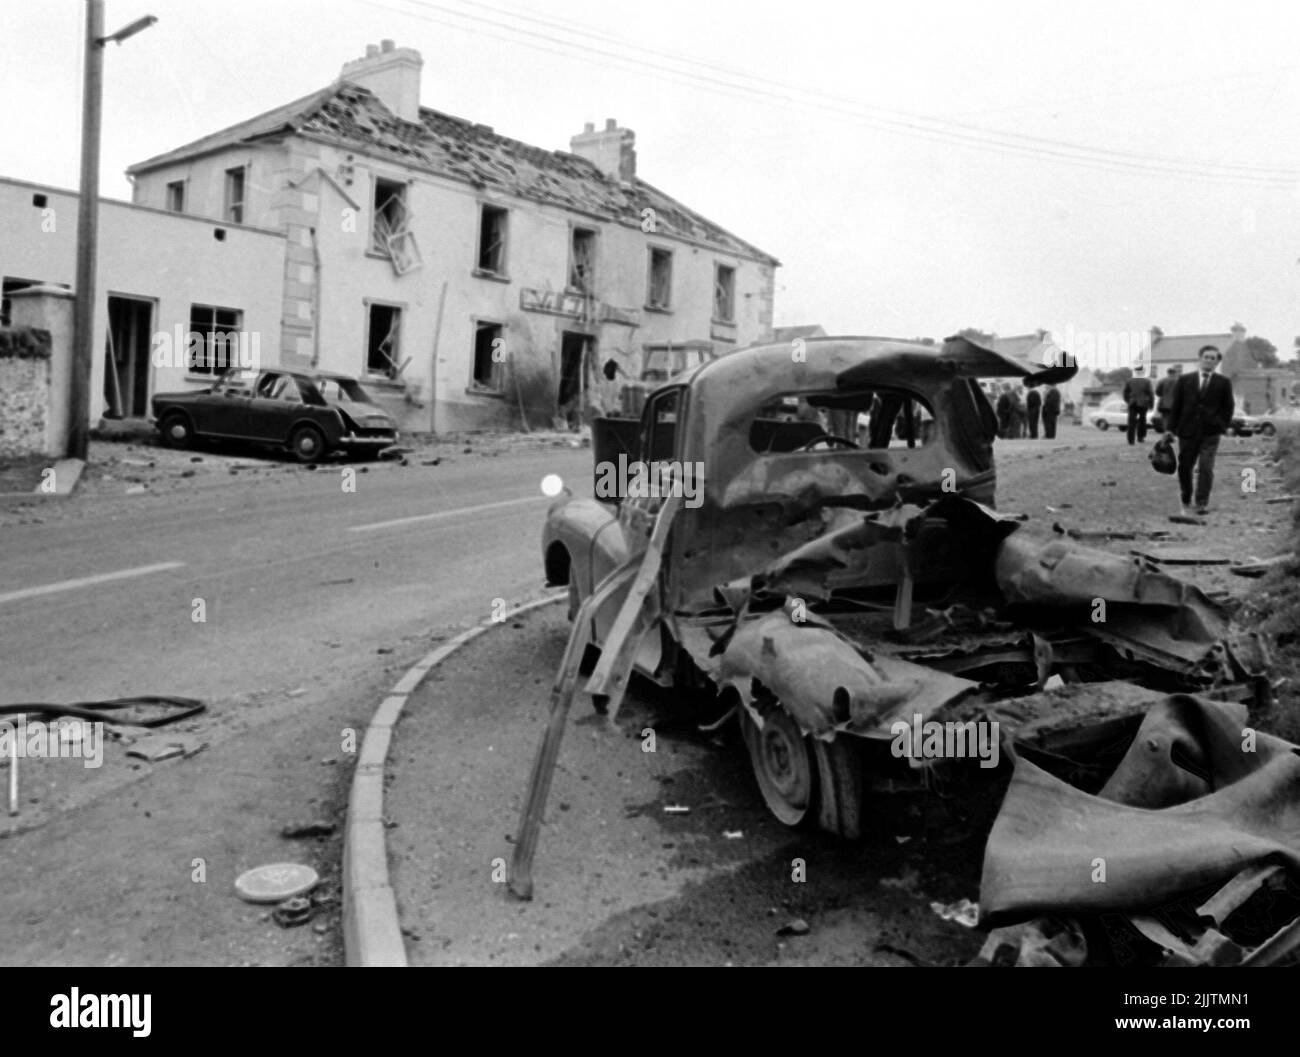 Aktenfoto vom 31/07/72 der Szene außerhalb der Beavpont Arms, im Dorf Claudy im Co Londonderry am 31. Juli 1972, nachdem drei Autobomben explodierten und neun Menschen getötet hatten. Anne Bradley, deren Mann vor 50 Jahren bei den Bombenangriffen auf Claudy getötet wurde, hat darauf gedrängt, dass Nordirland nie wieder in seine bewegte Vergangenheit zurückkehrt. Ausgabedatum: Donnerstag, 28. Juli 2022. Stockfoto